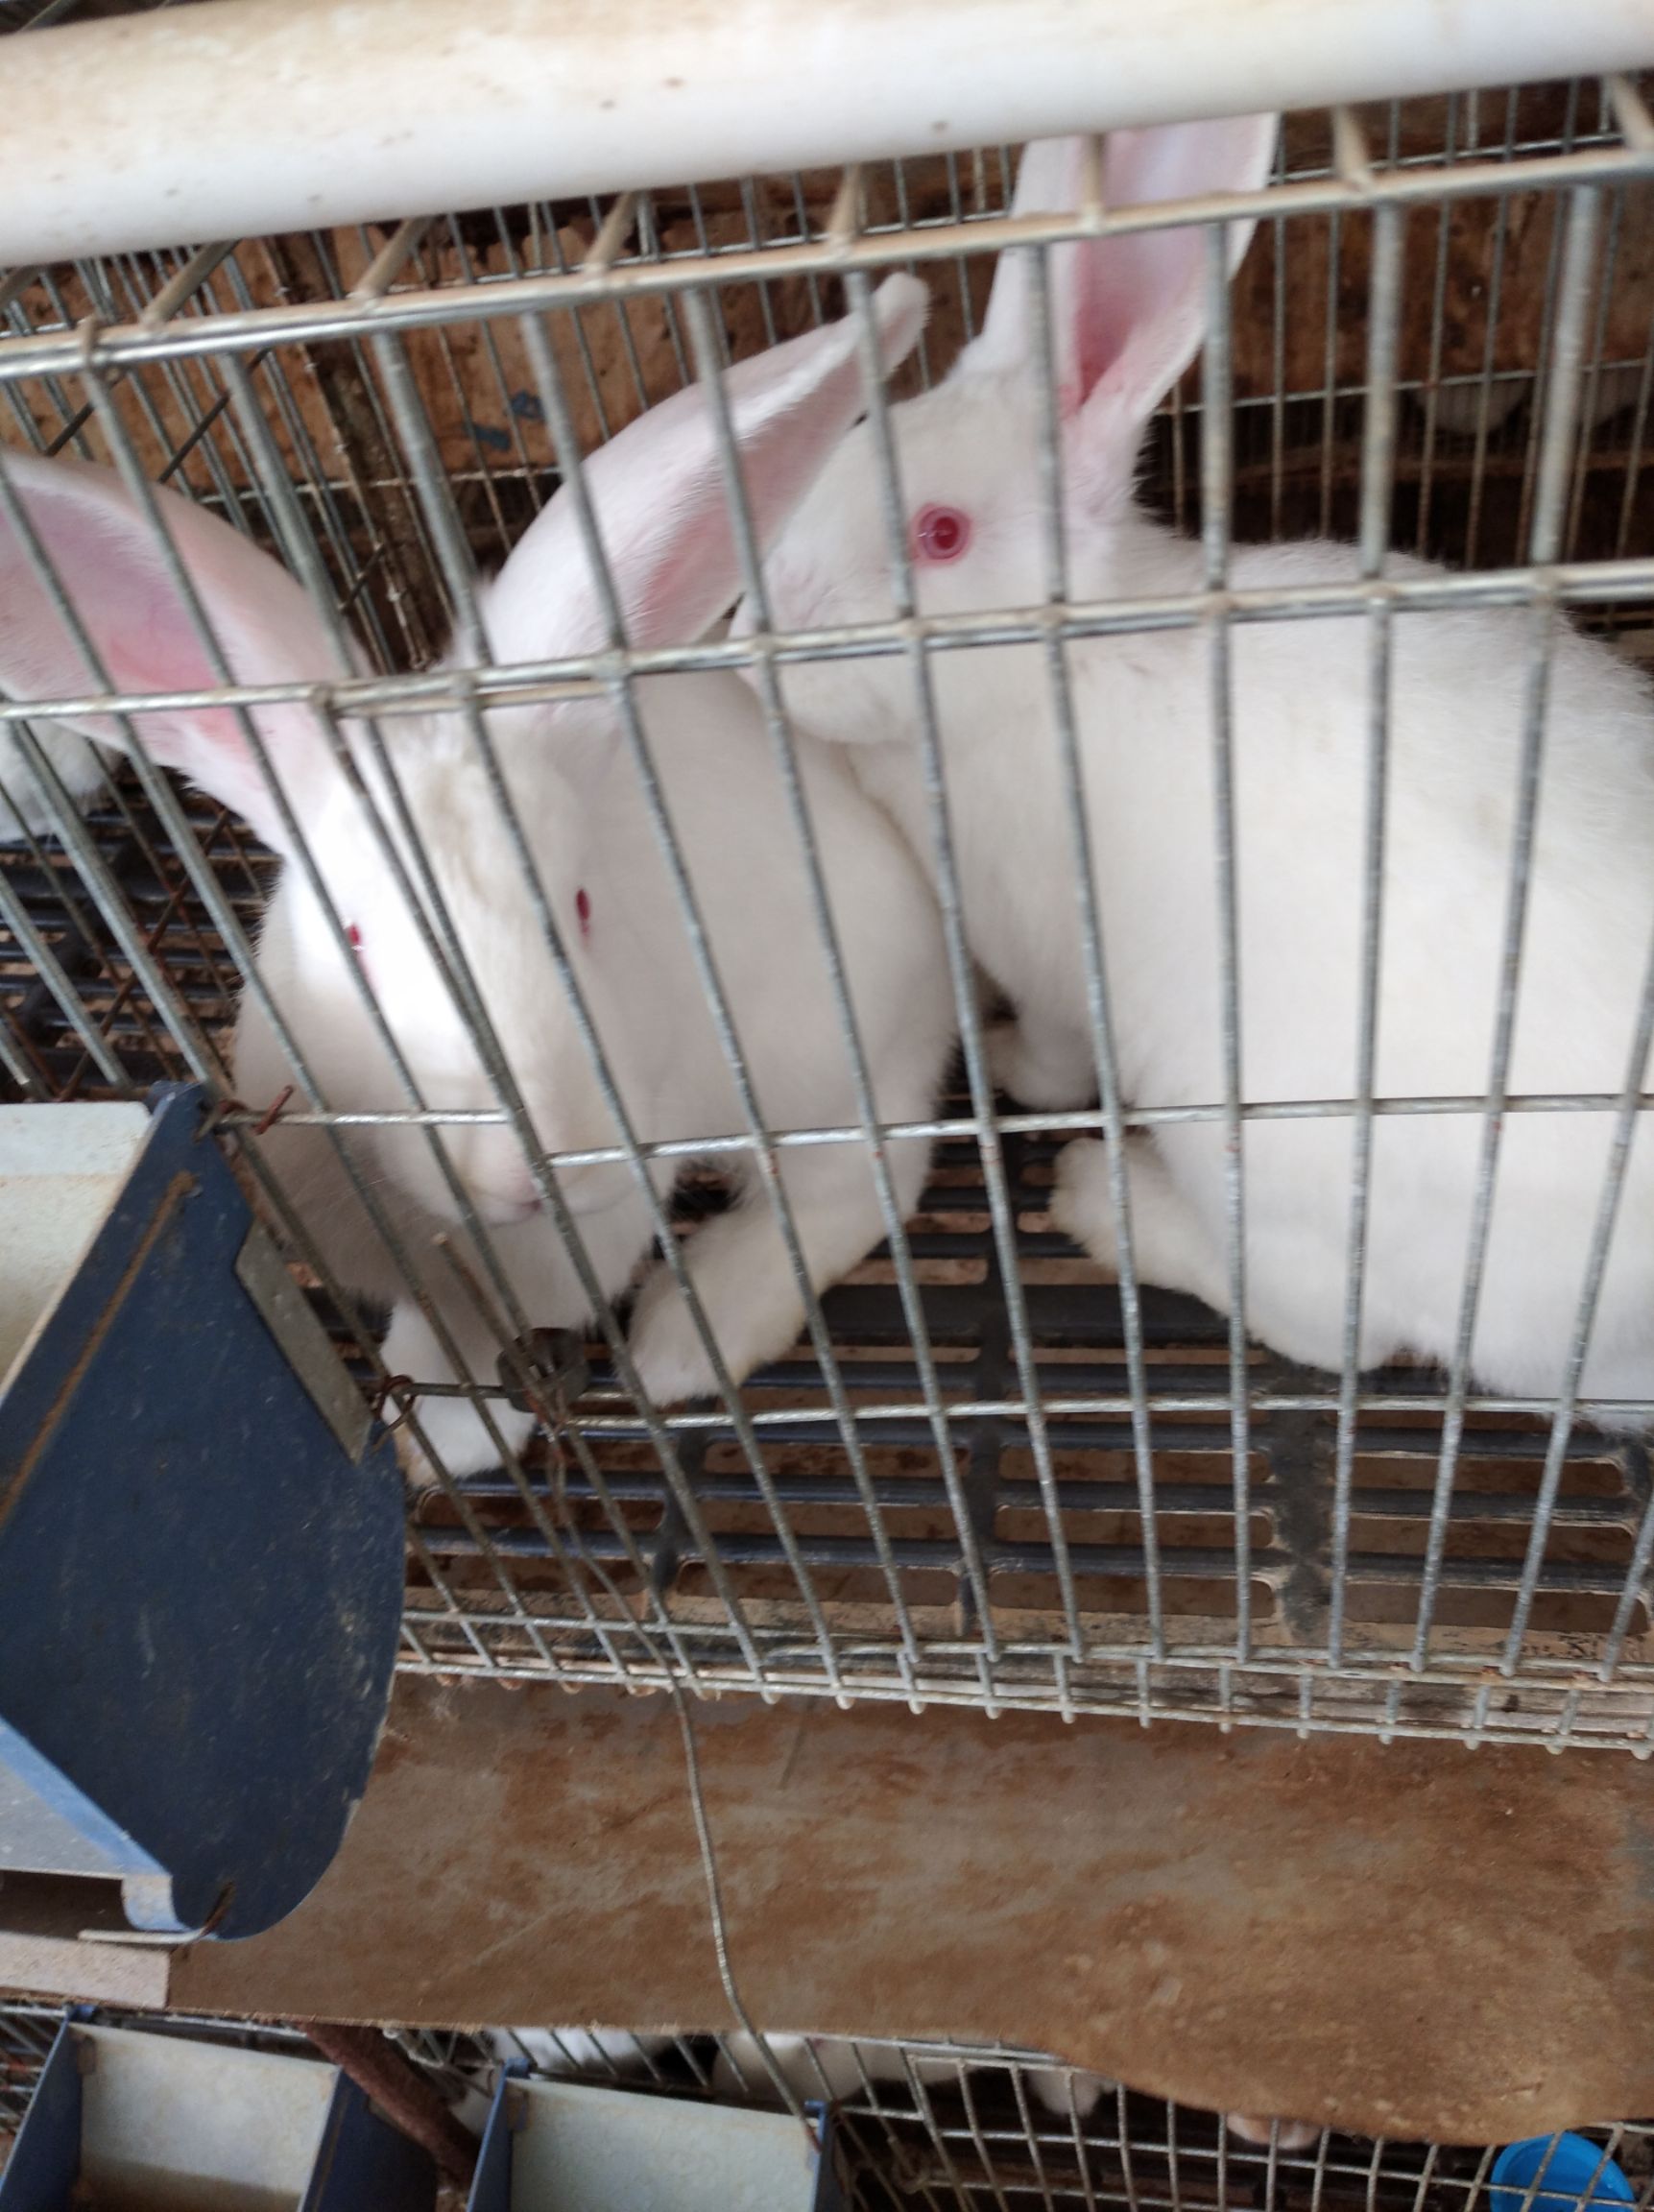 名:比利时兔 品种名:比利时兔 单只重:3-5斤 用途:肉兔 规格:中型兔